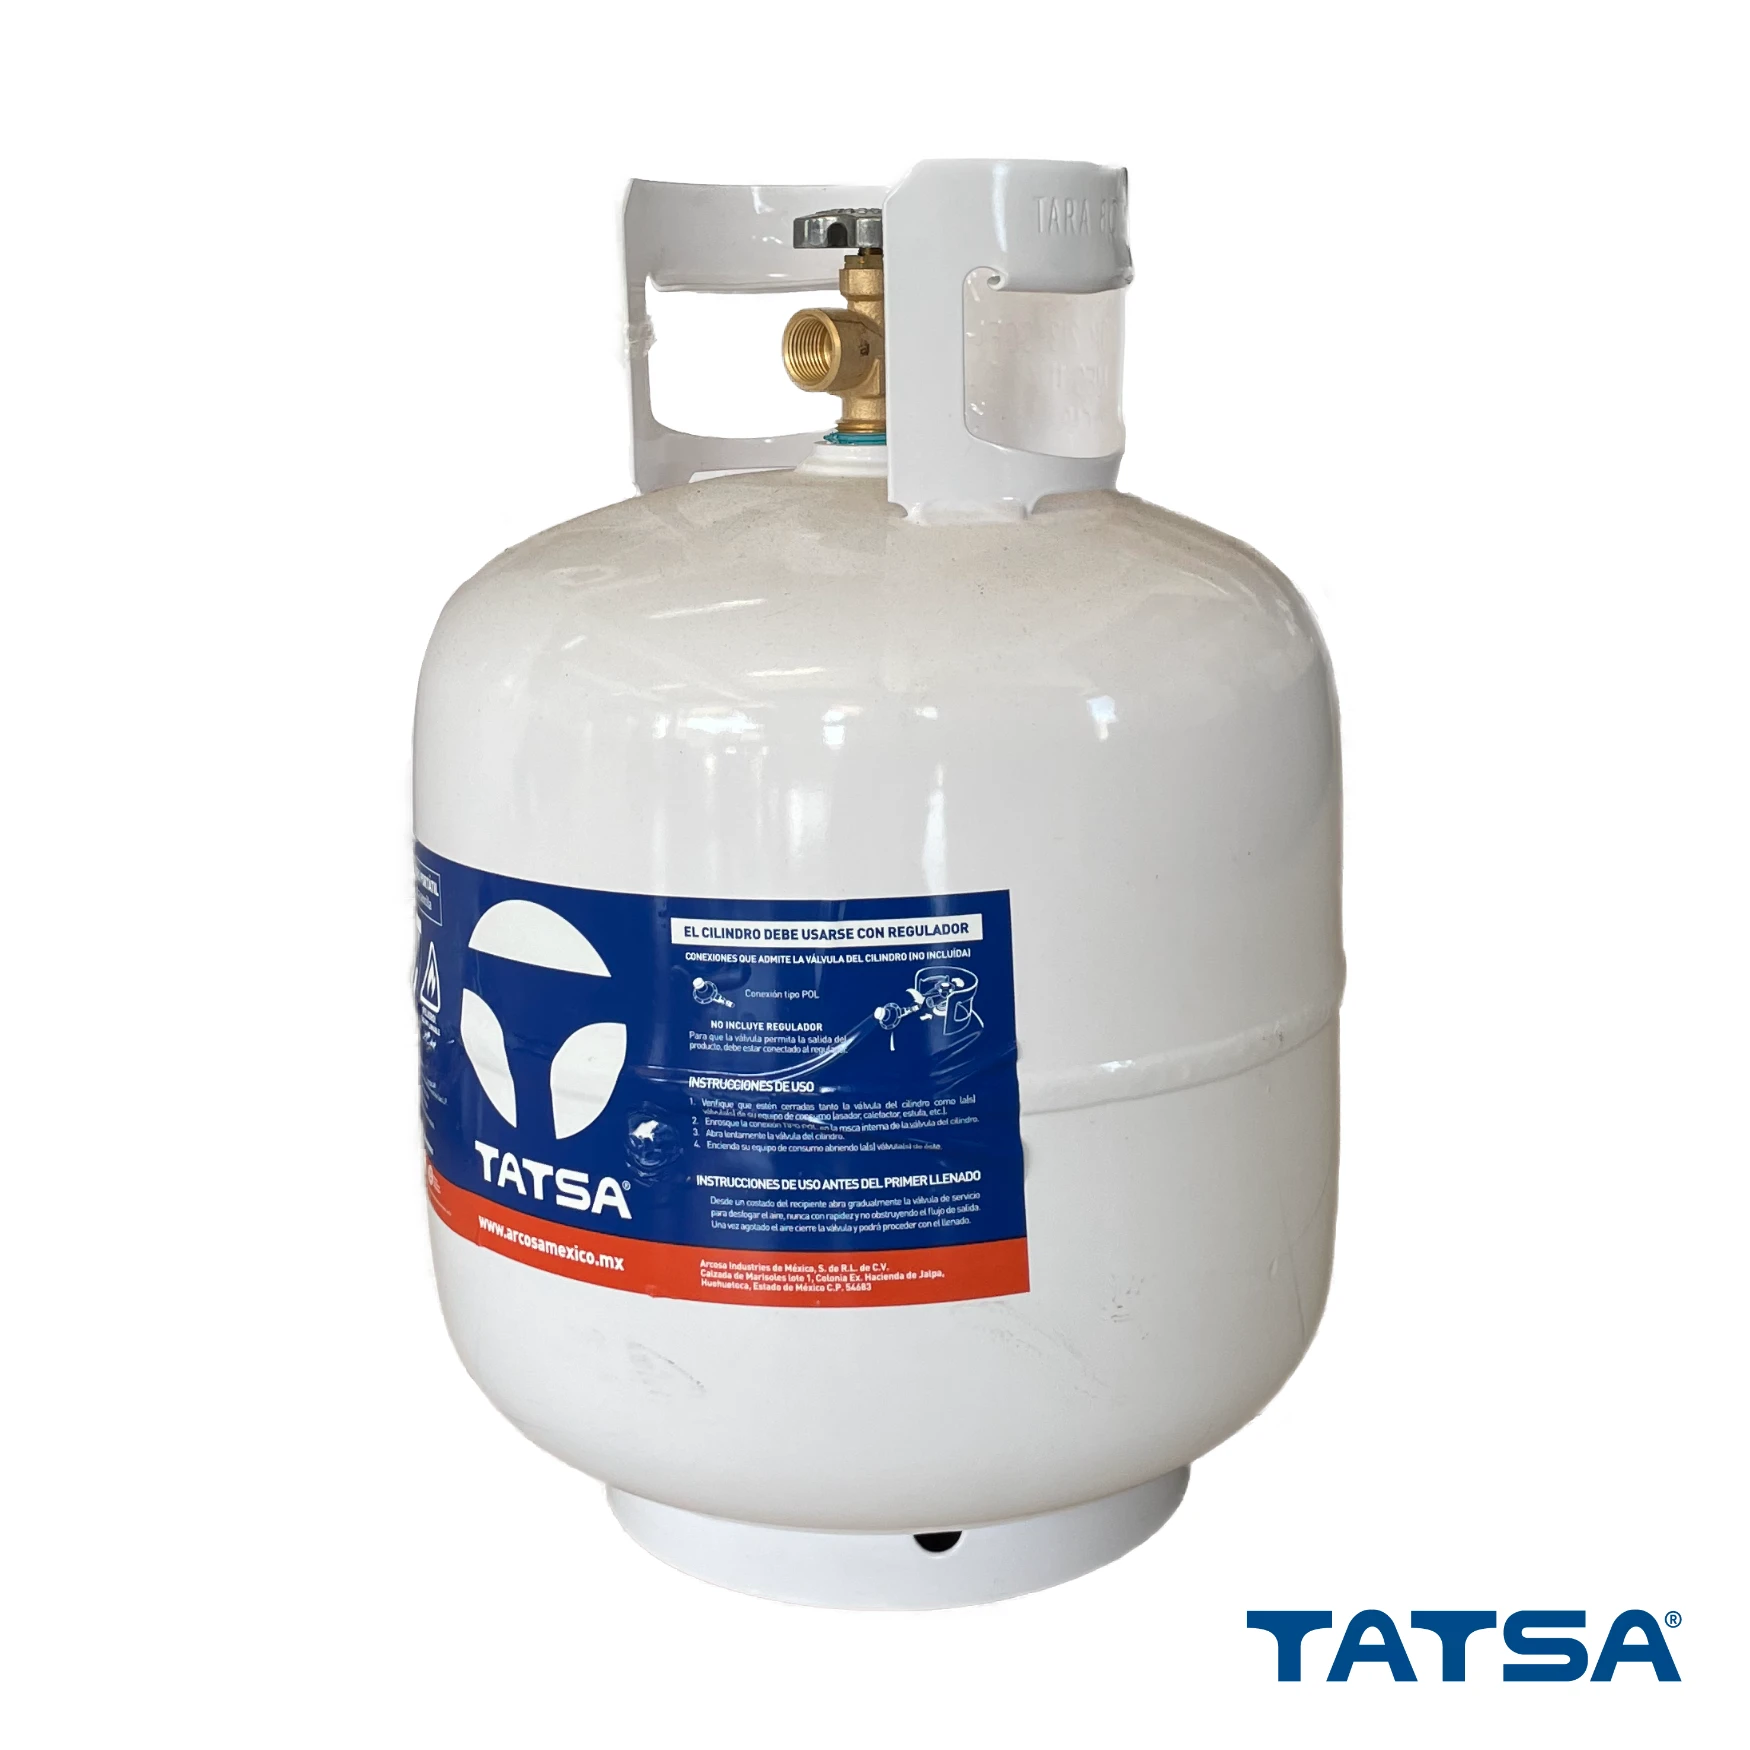 Cilindro para gas de 9.5 kilos de la marca Tatsa de venta en Ferretería Onofre